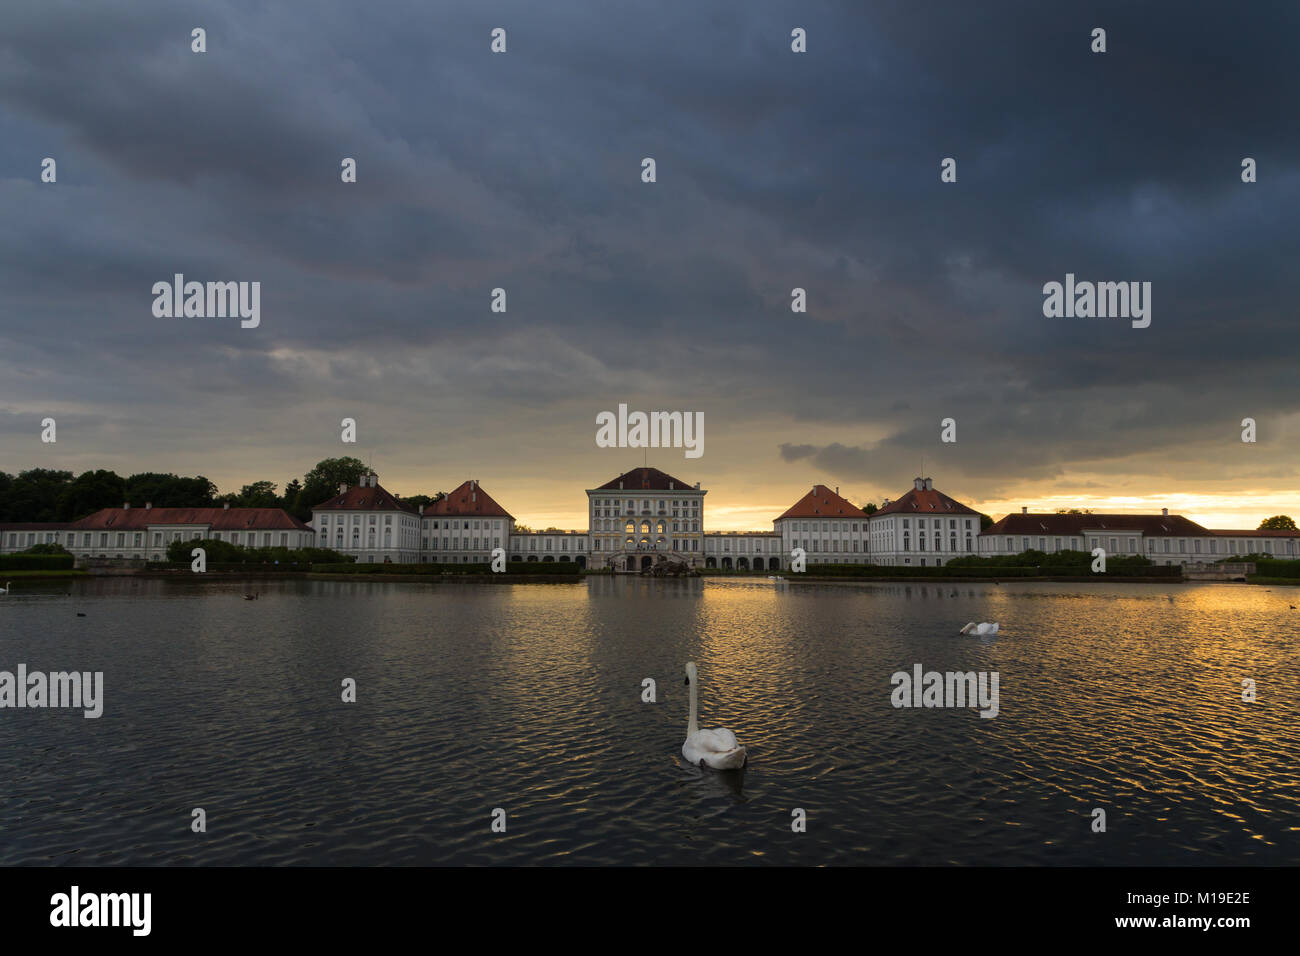 Sorm fotografías e imágenes de alta resolución - Alamy